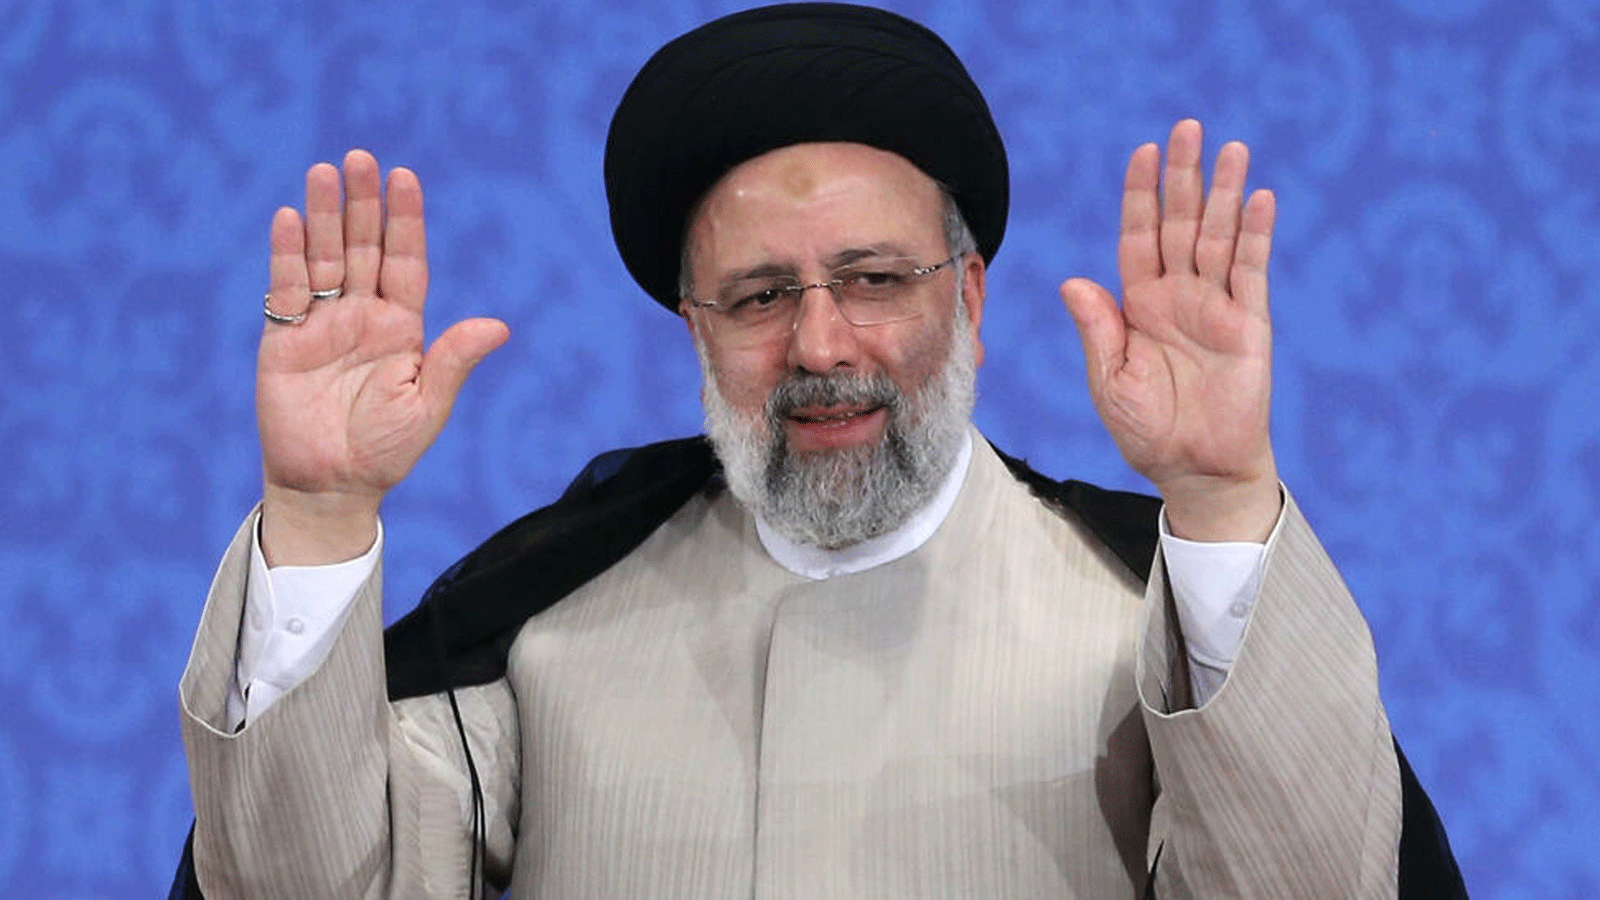 إبراهيم رئيسي، المحافظ المتشدد، فاز في انتخابات إيران الرئاسية في حزيران/ يونيو